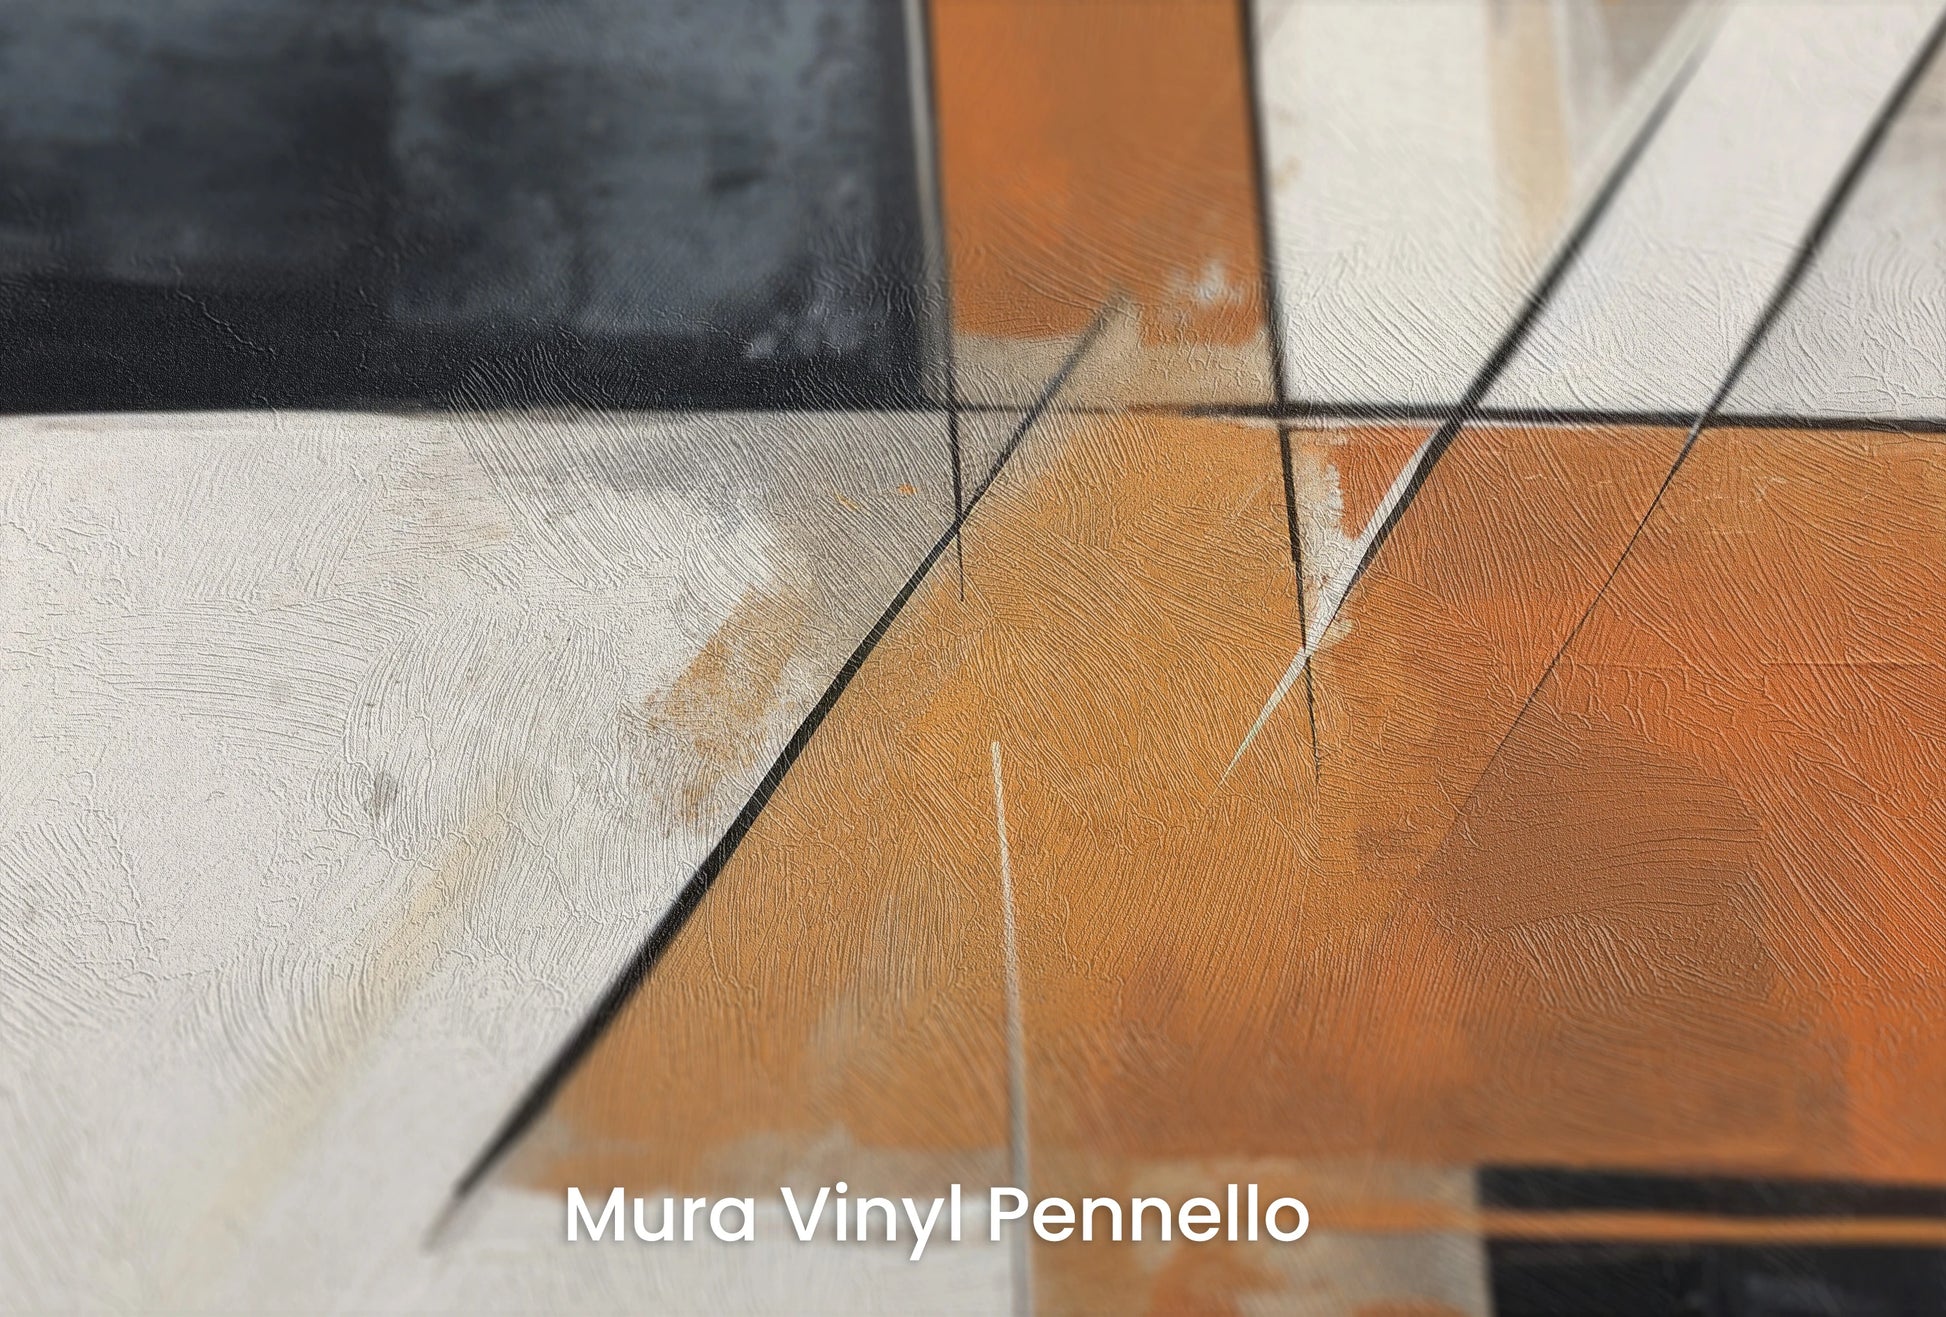 Zbliżenie na artystyczną fototapetę o nazwie Contrasting Lines na podłożu Mura Vinyl Pennello - faktura pociągnięć pędzla malarskiego.